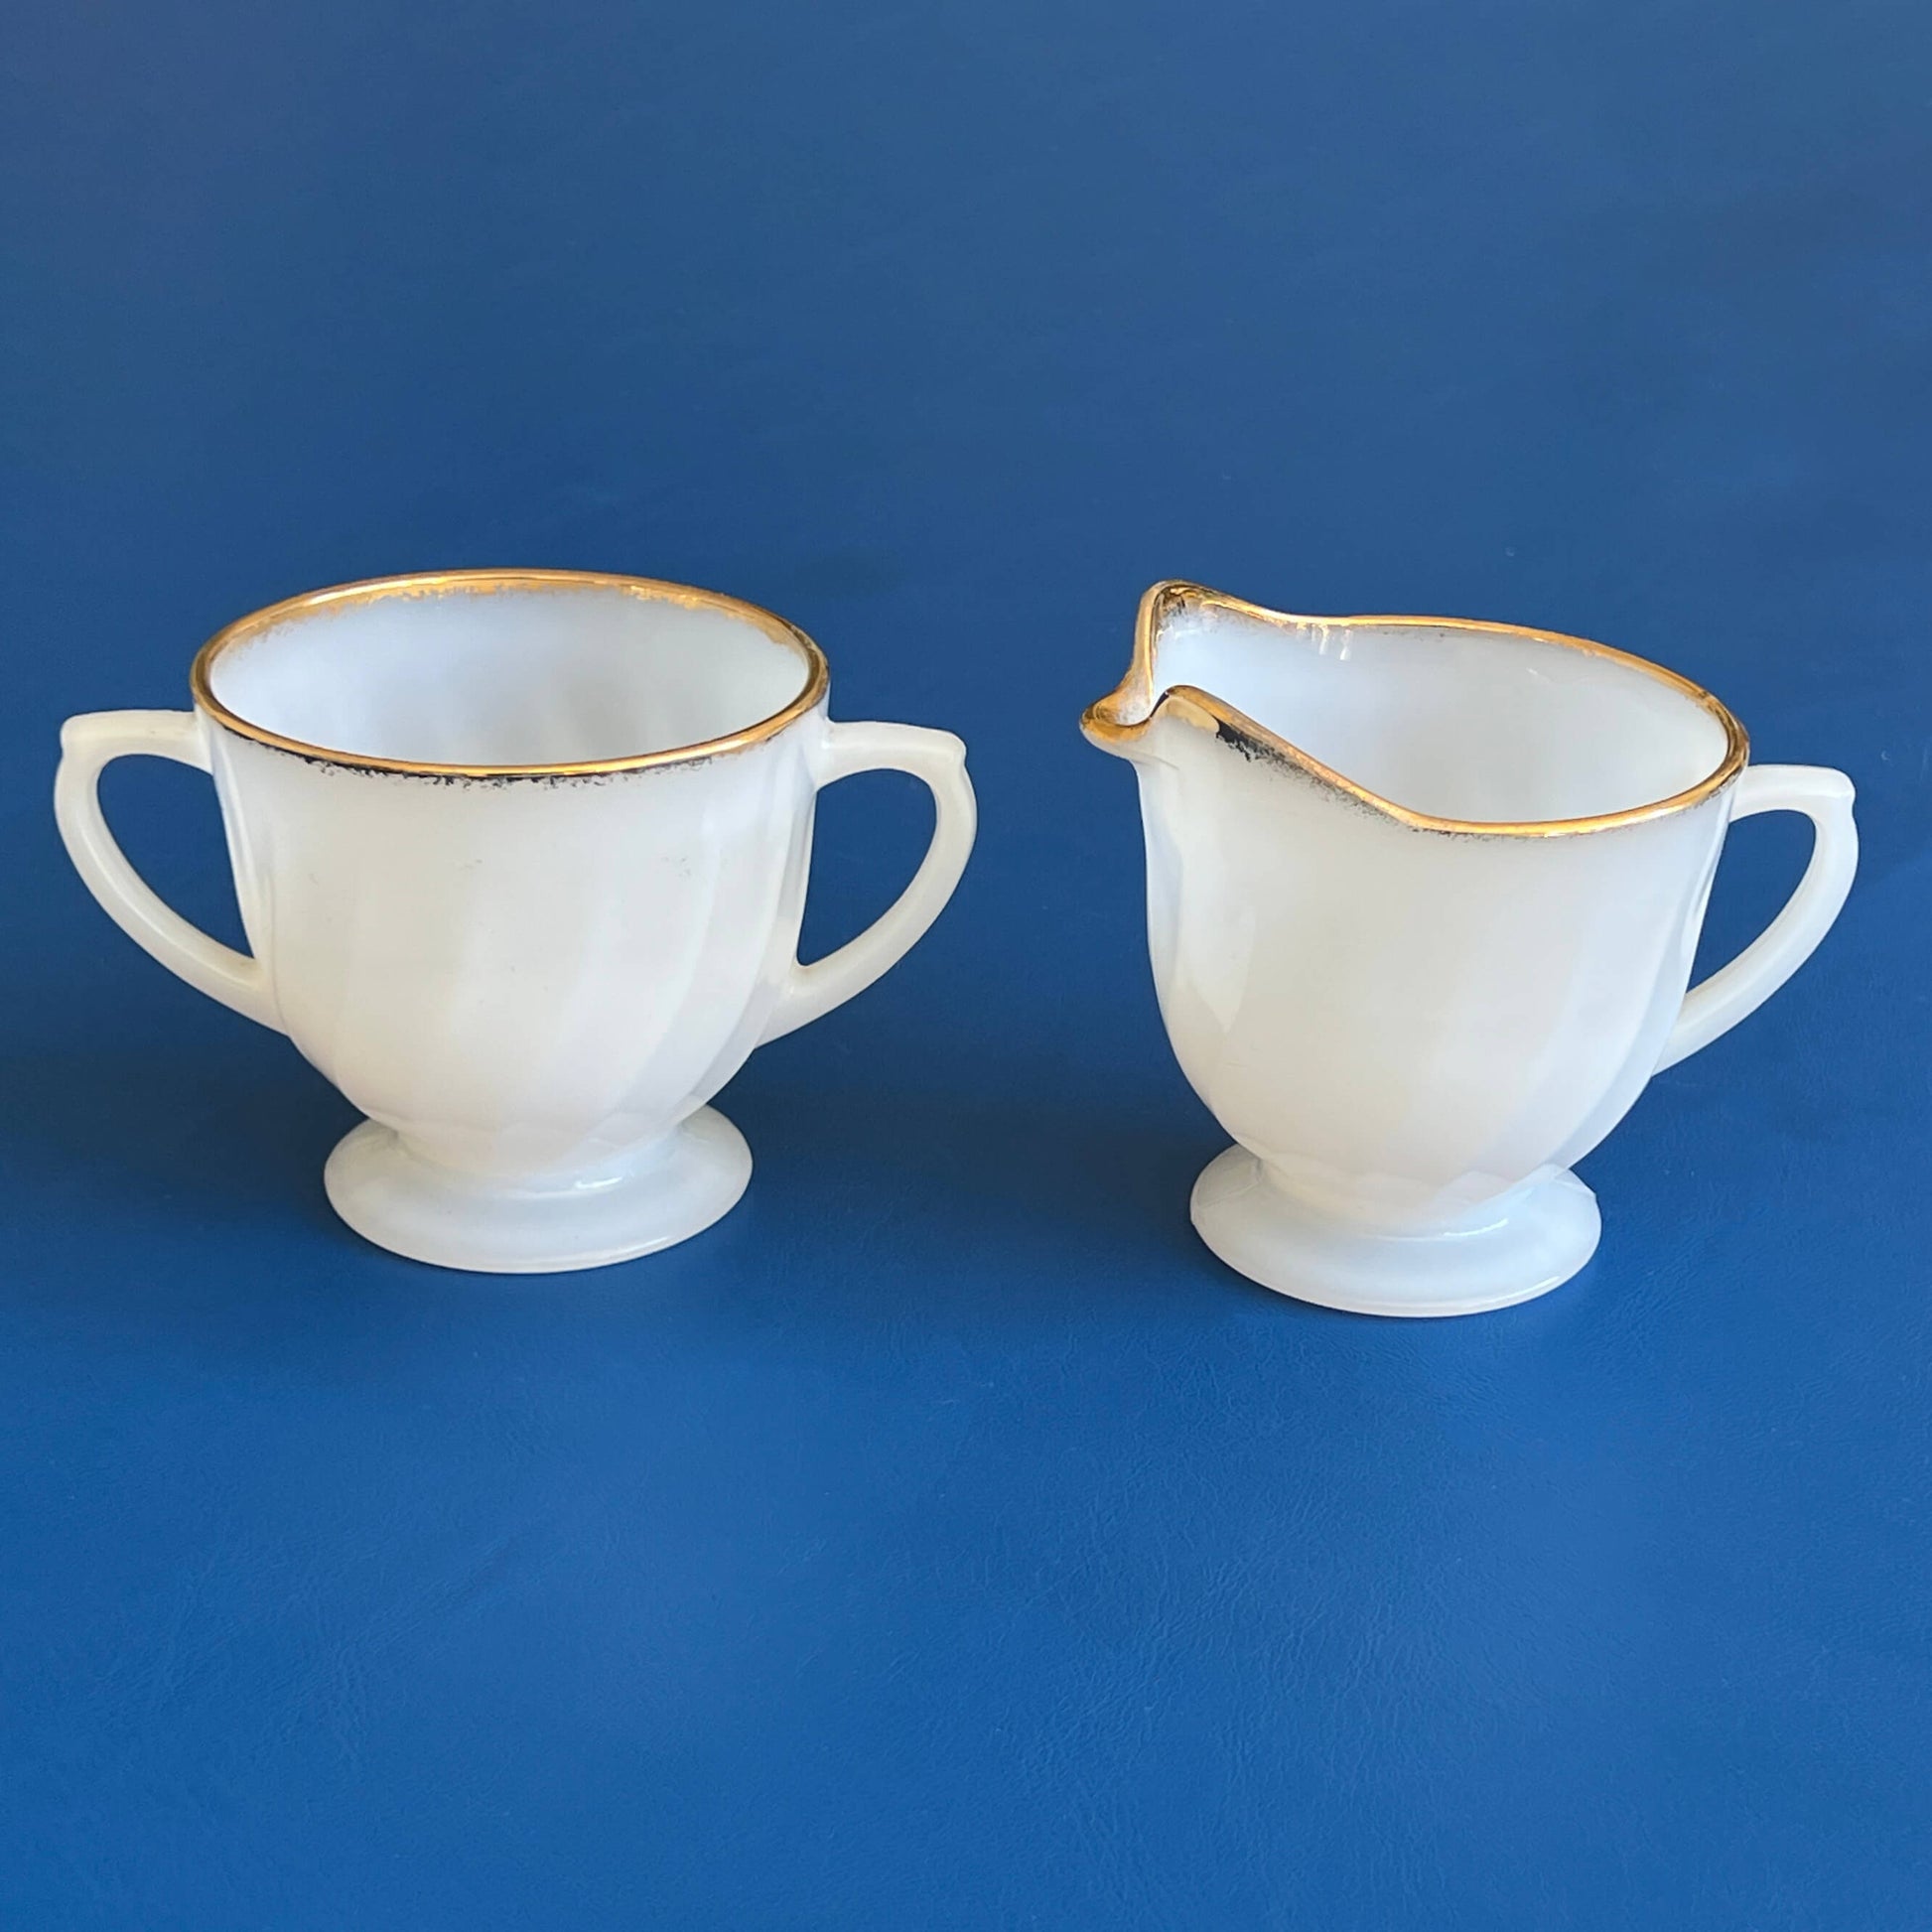 Fire-King-White-Glass-Creamer-and-Sugar-Bowl-Set.-Shop-eBargainsAndDeals.com